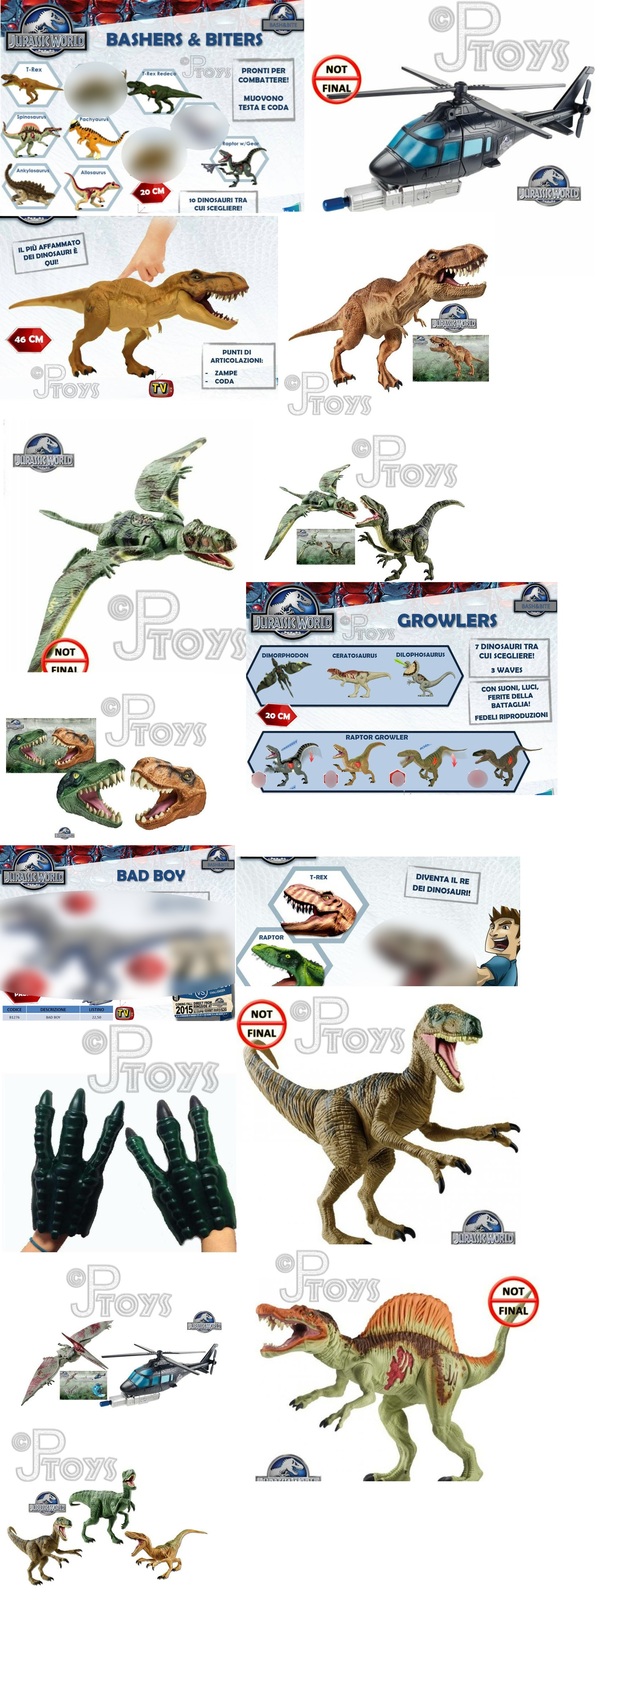 Juguetes de Jurassic World a la venta a partir de Marzo 2015 en todas las jugueterias